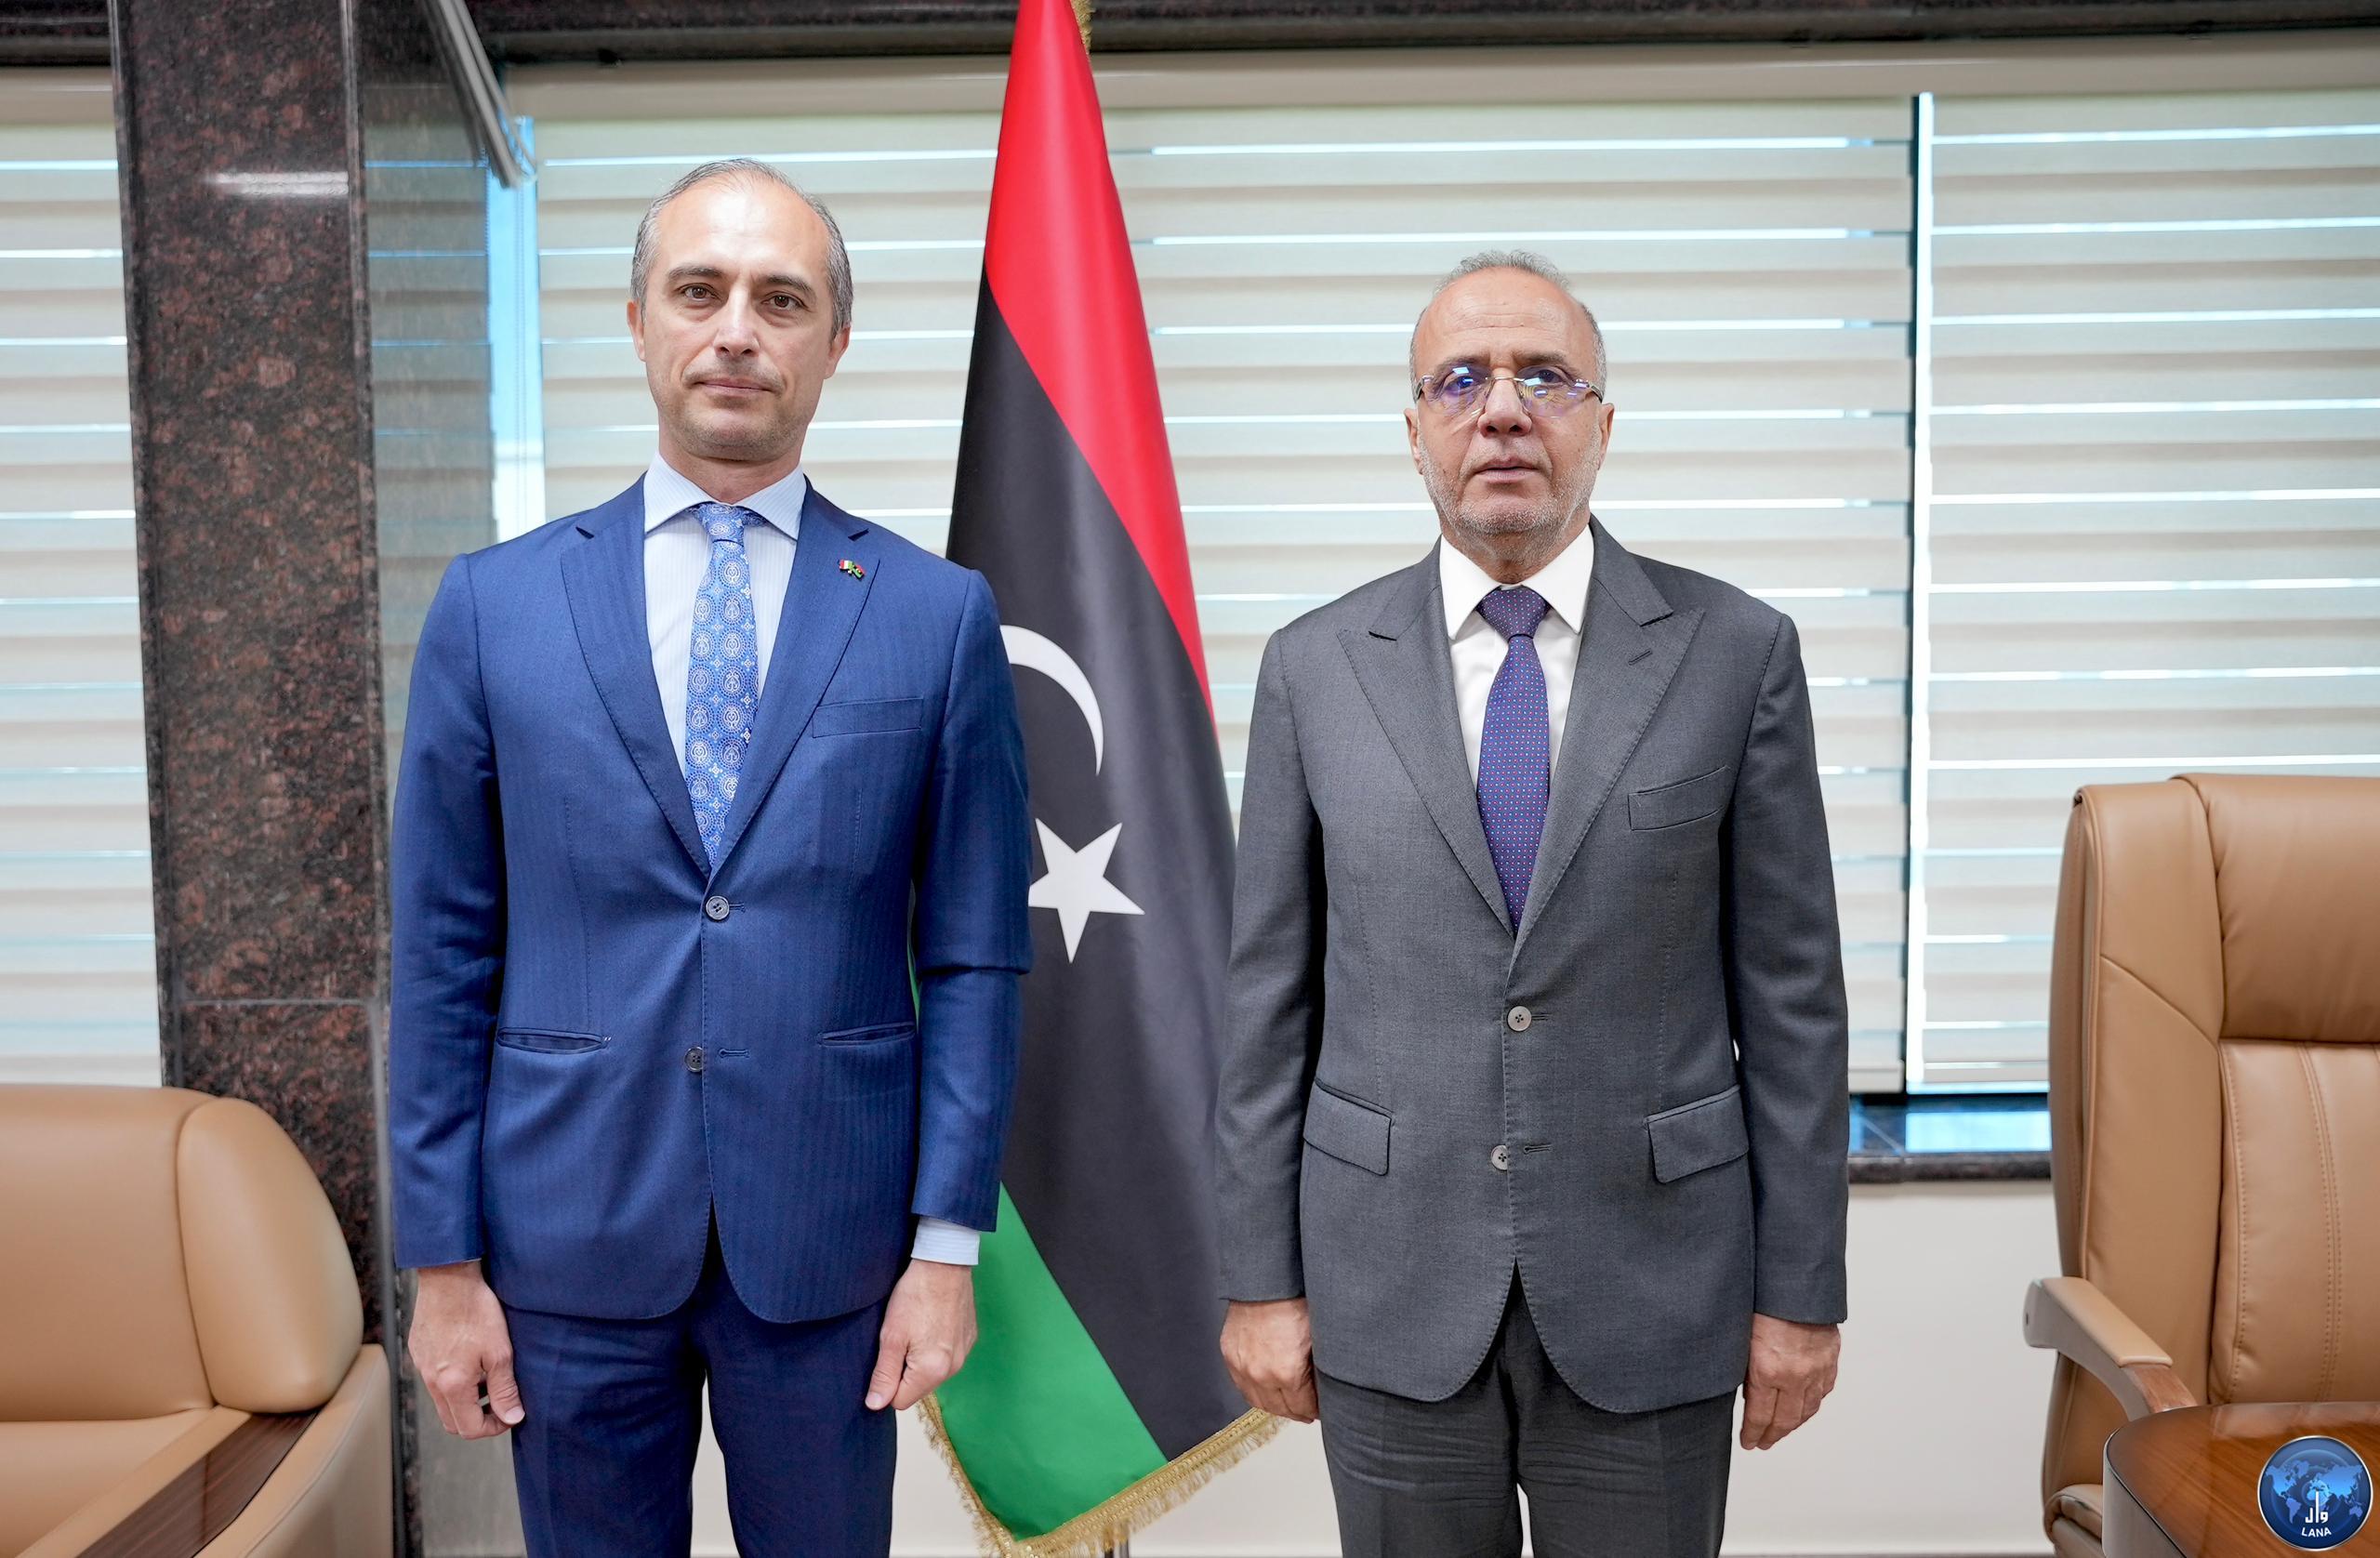  النائب بالمجلس الرئاسي ( اللافي ) يلتقي سفير ايطاليا لدى ليبيا .